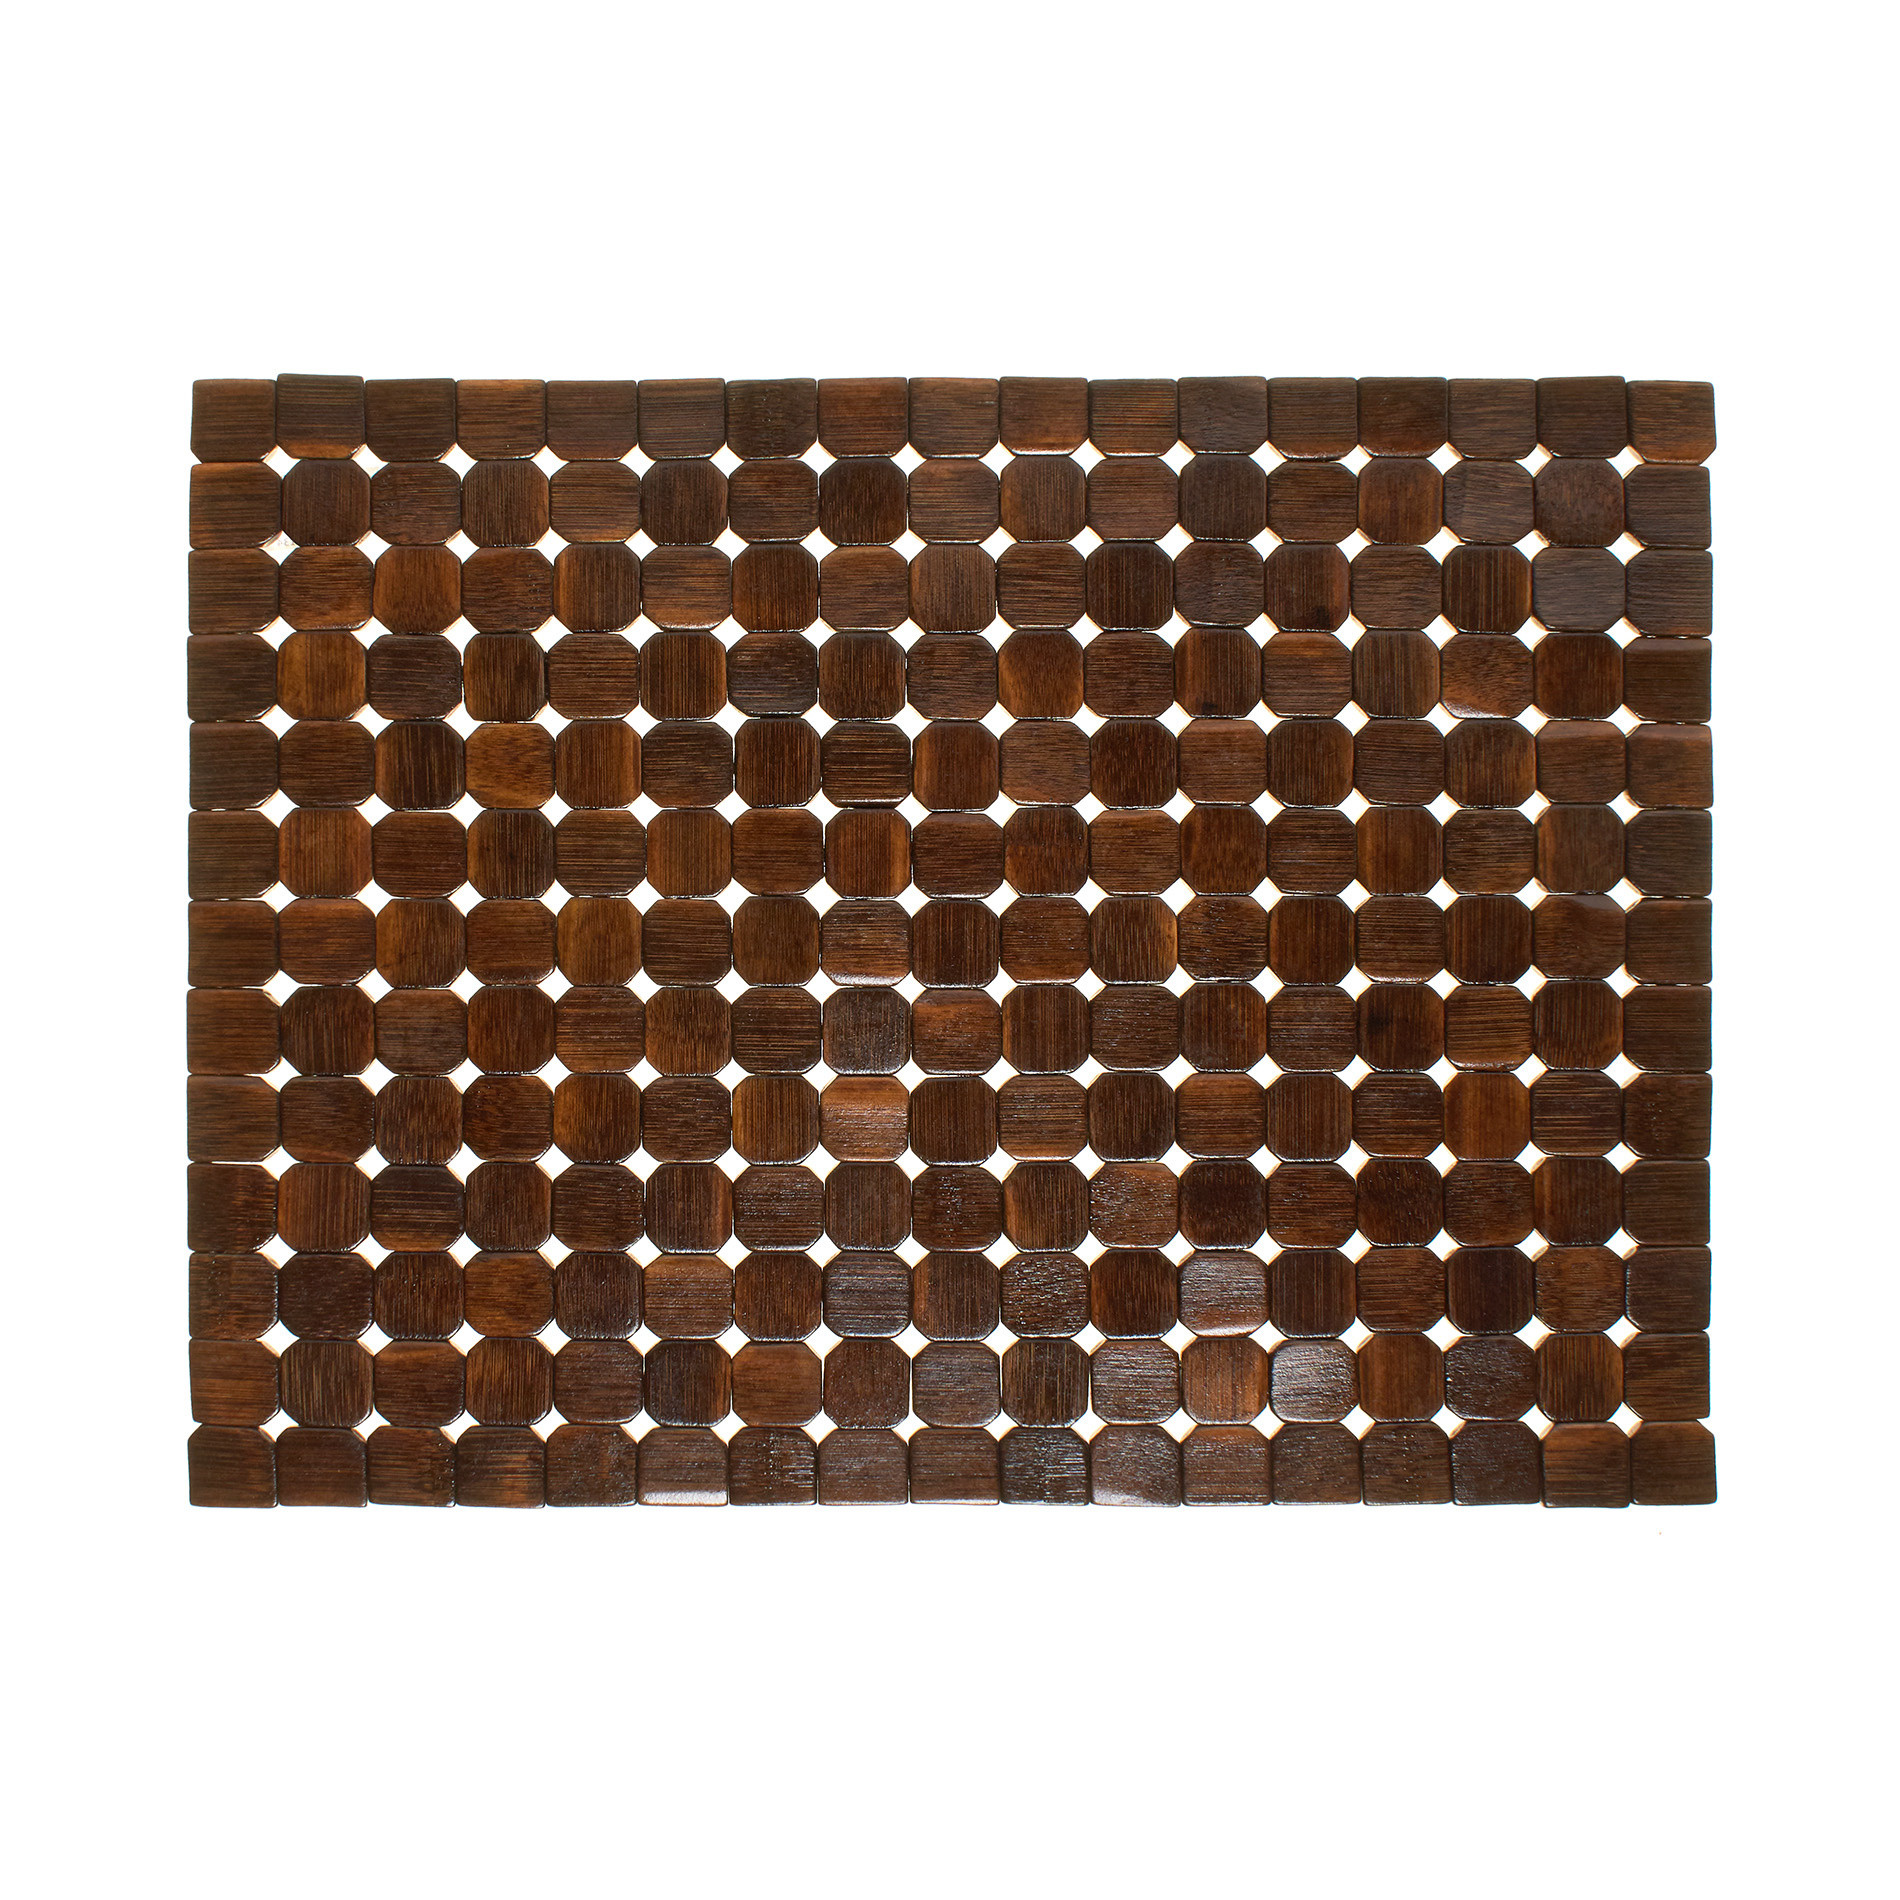 Расписной бамбуковый коврик для столовых приборов Coincasa, темно-коричневый